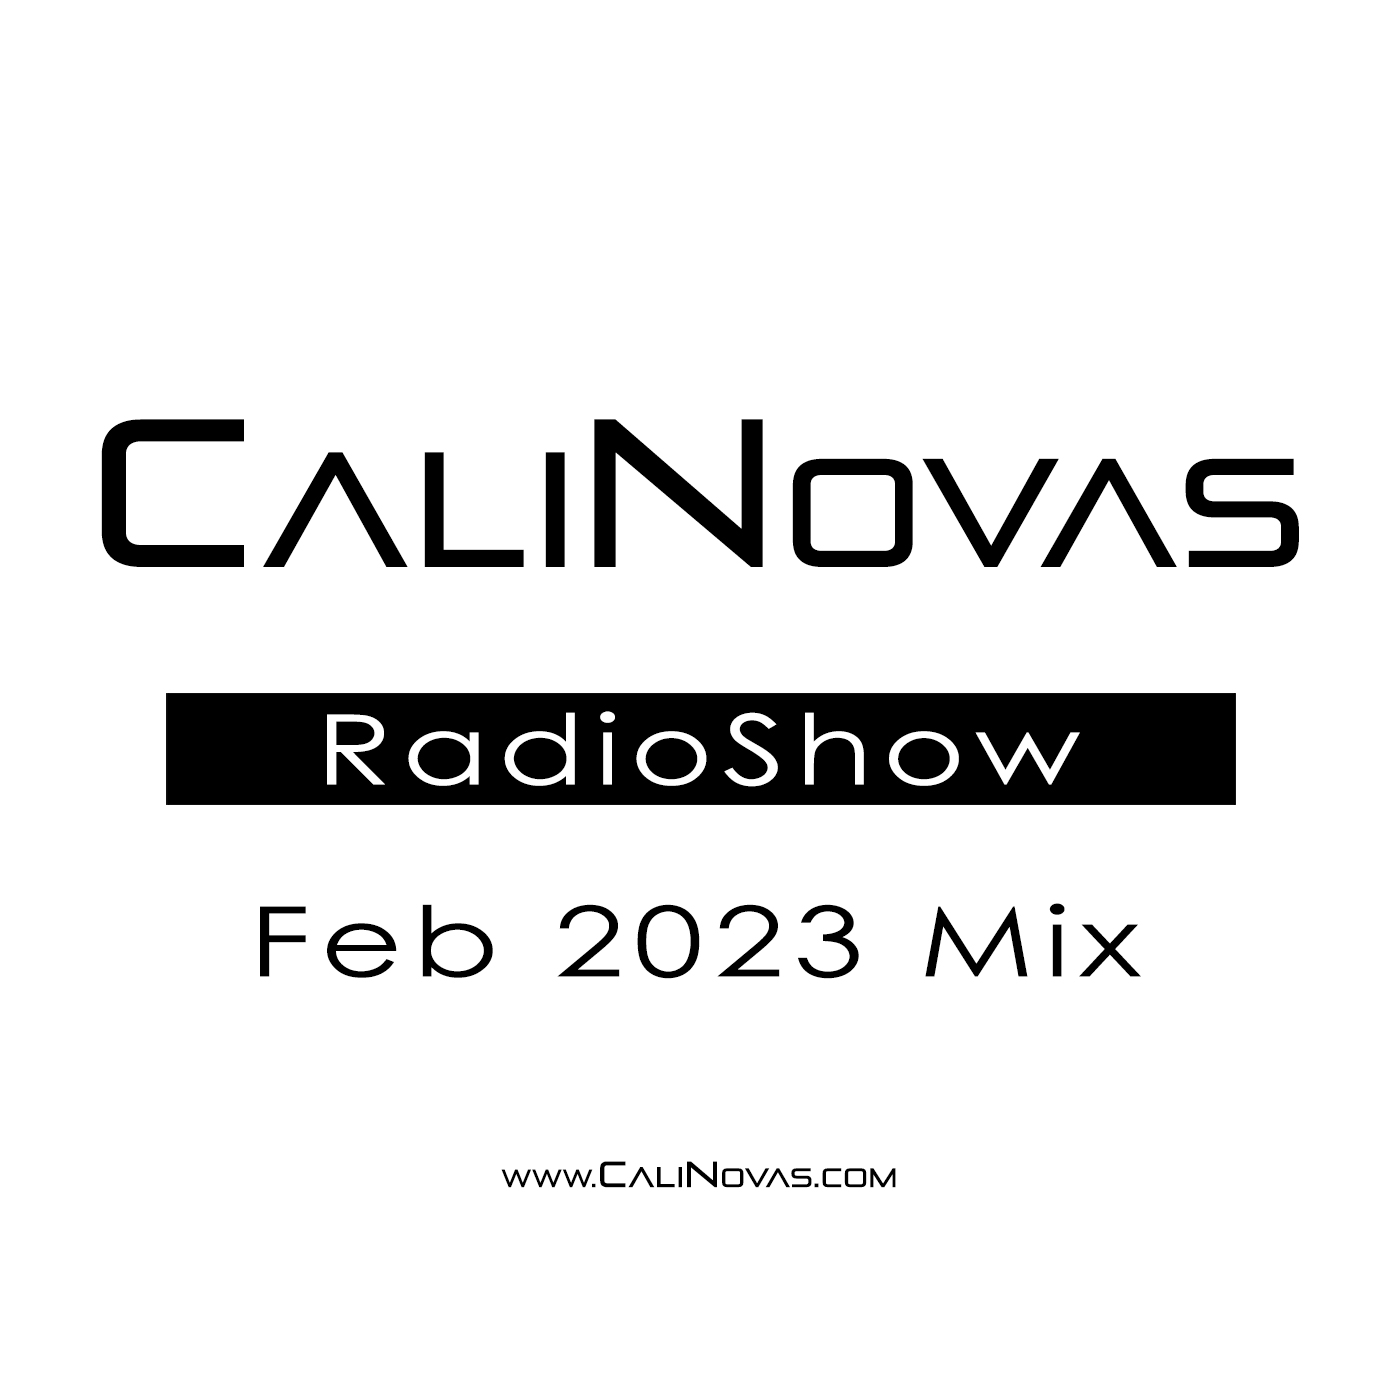 CaliNovas Radio Show - February 2023 Mix